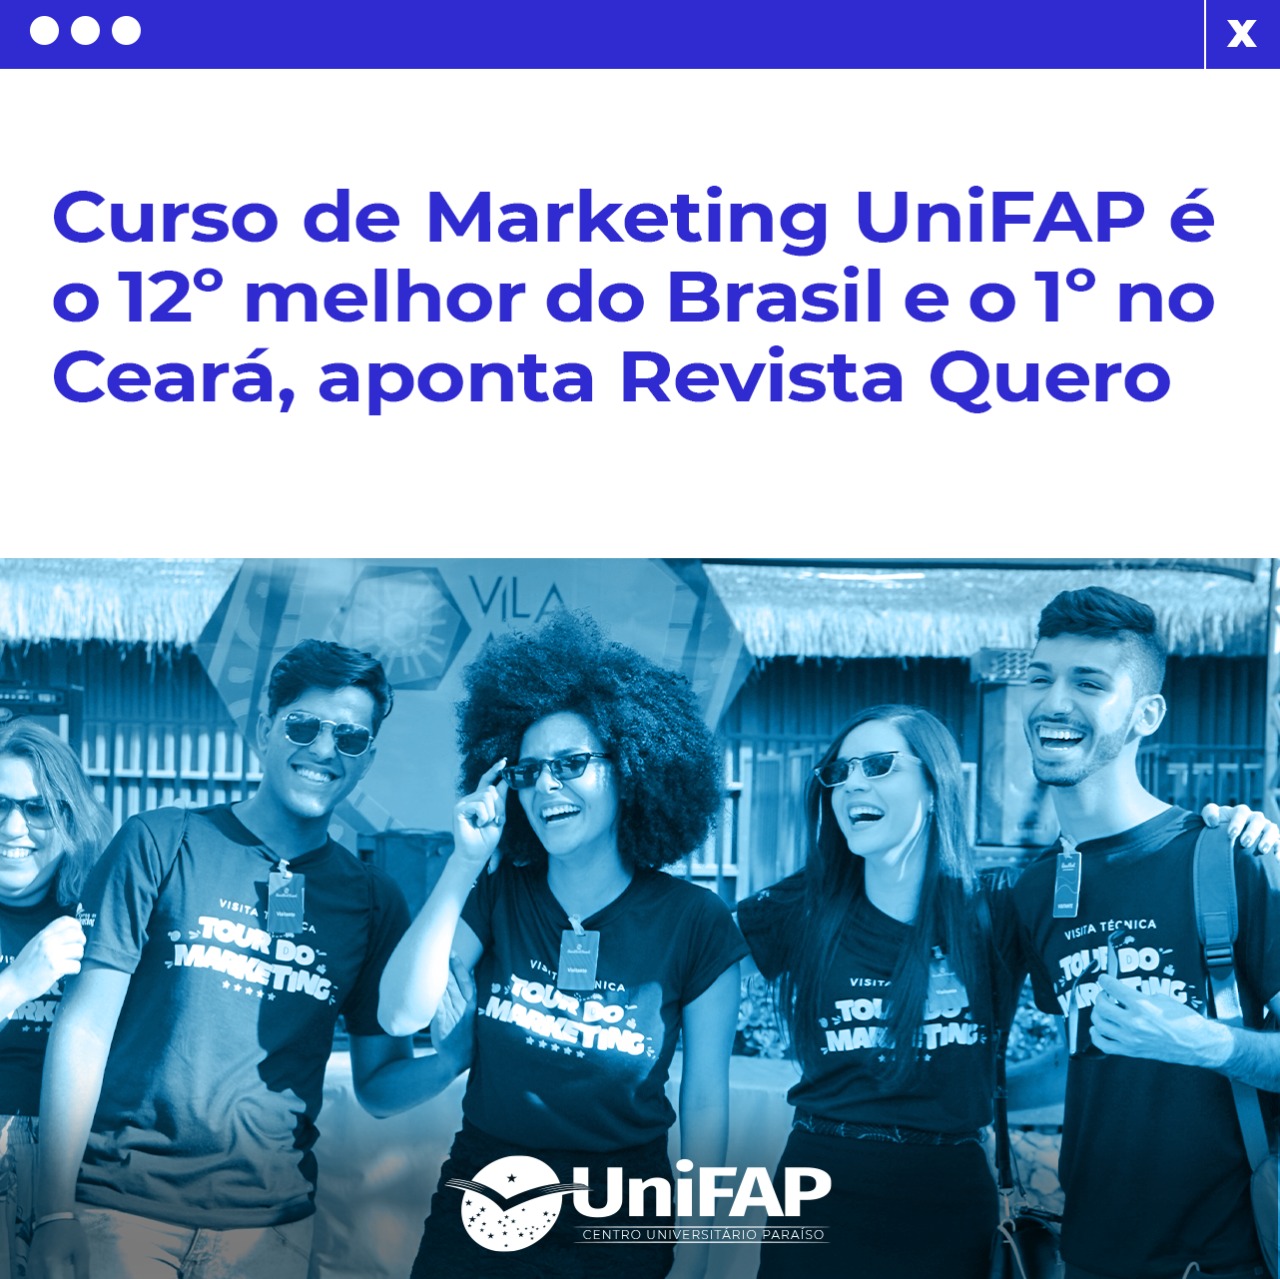 Curso de Marketing UniFAP está entre os melhores do Brasil, aponta Revista Quero